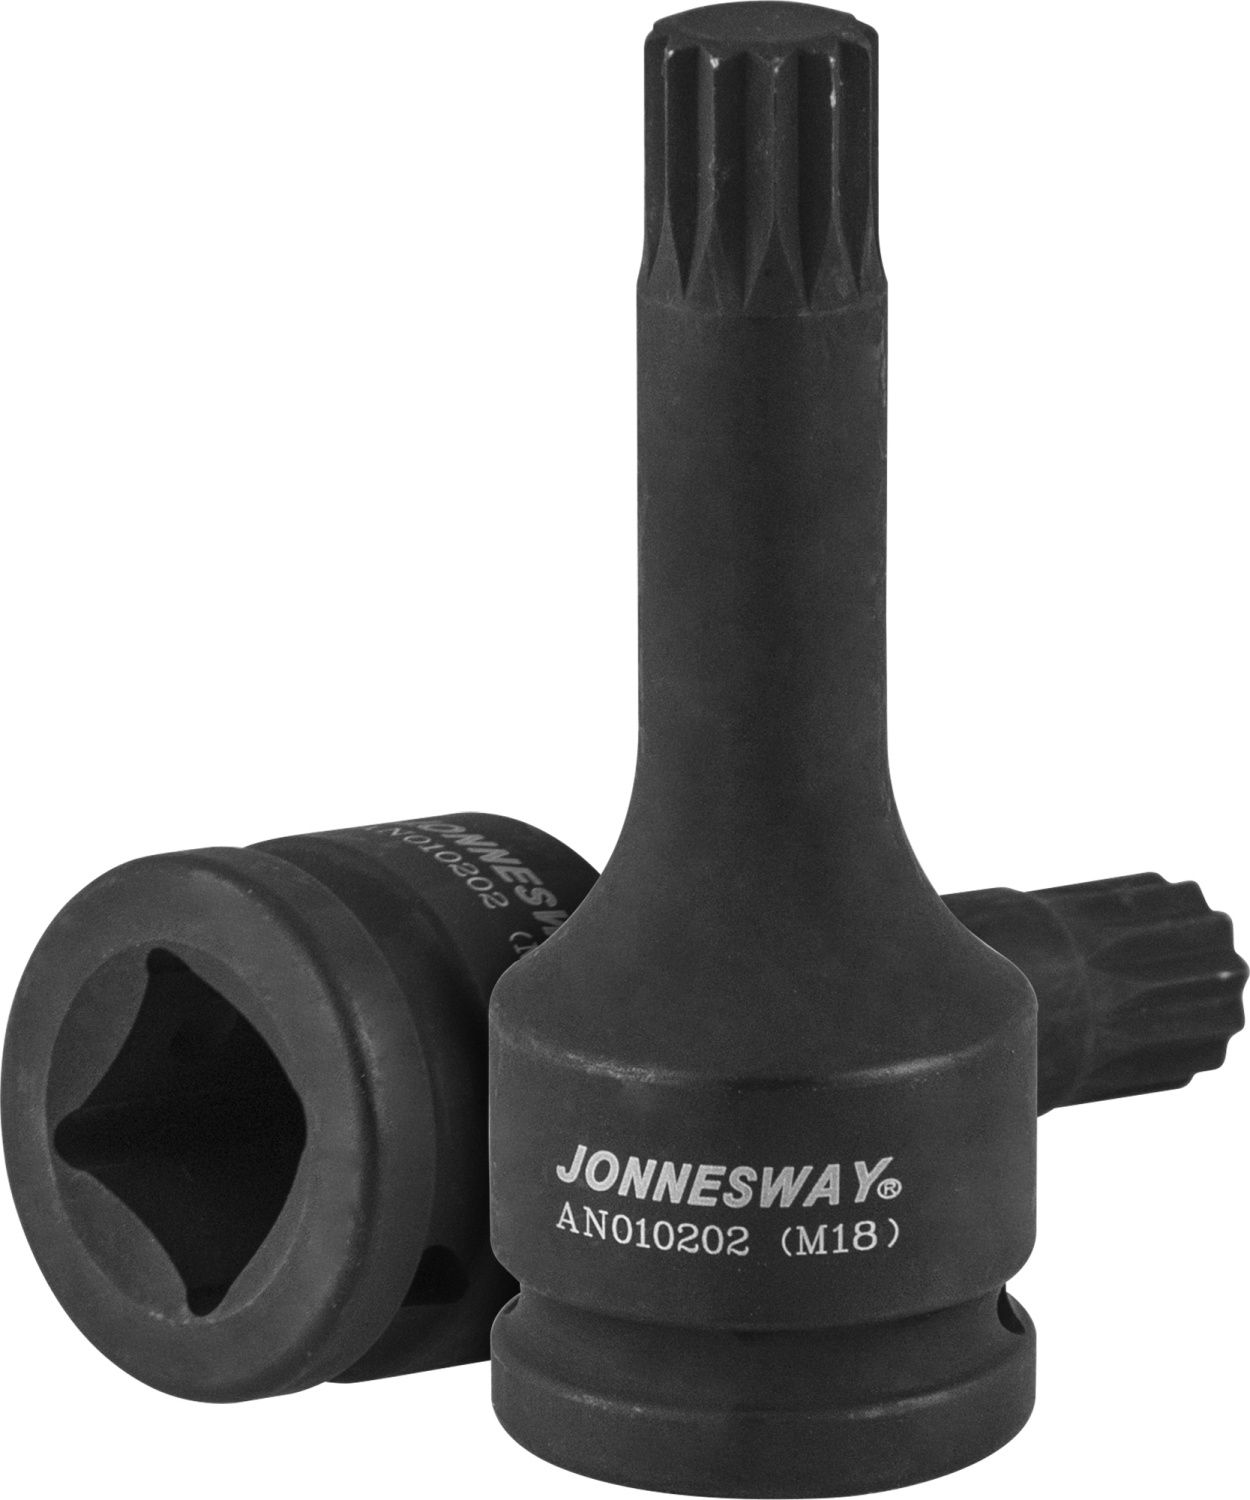 JONNESWAY AN010202 48945 Насадка ударная 3/4''DR М18х105 мм. для ступичных гаек а/м VAG